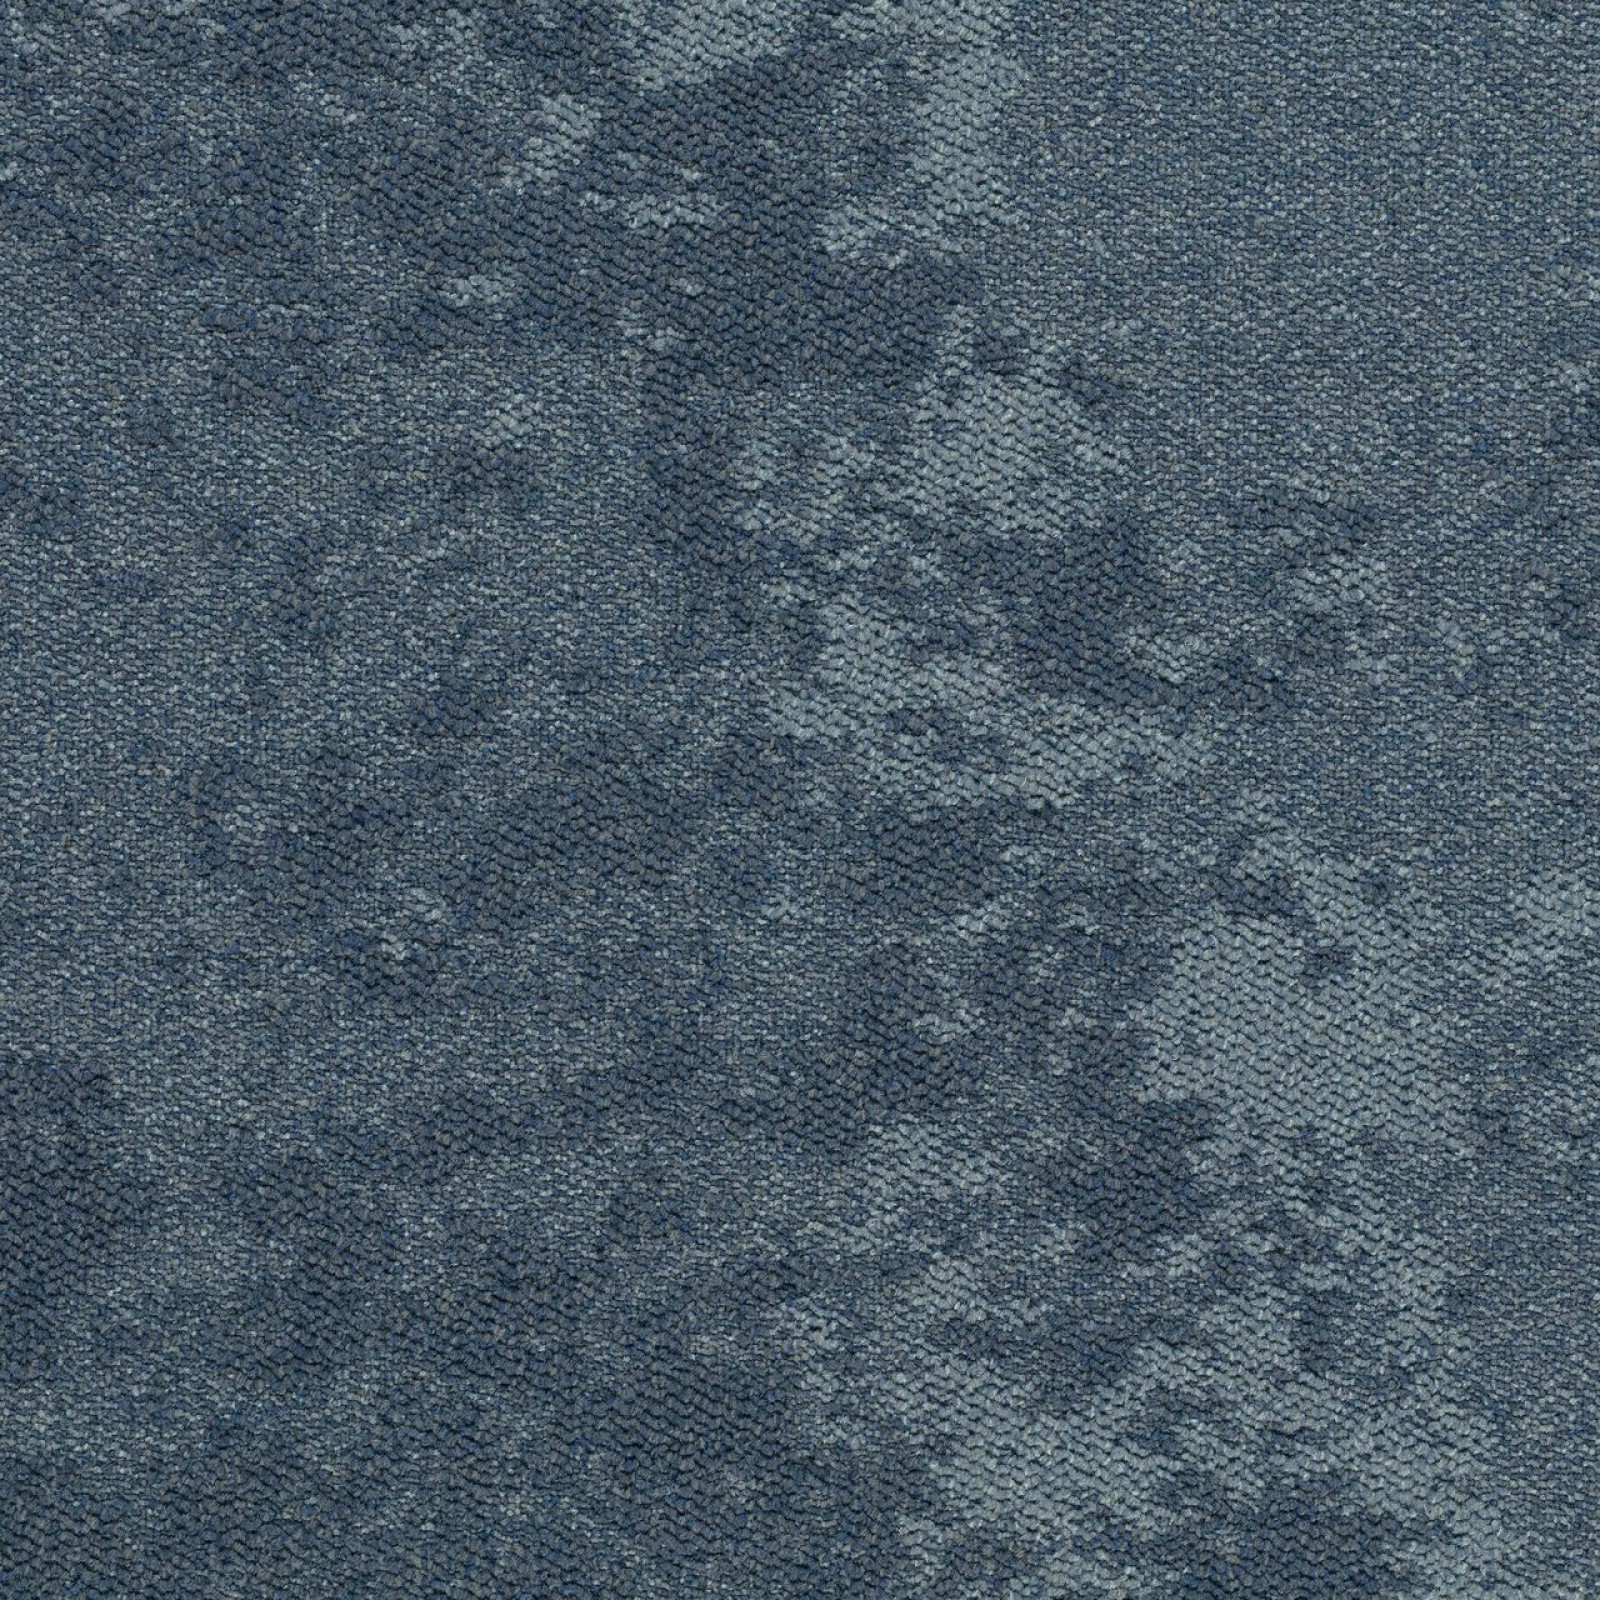 Vzor - 3406 sirocco blue